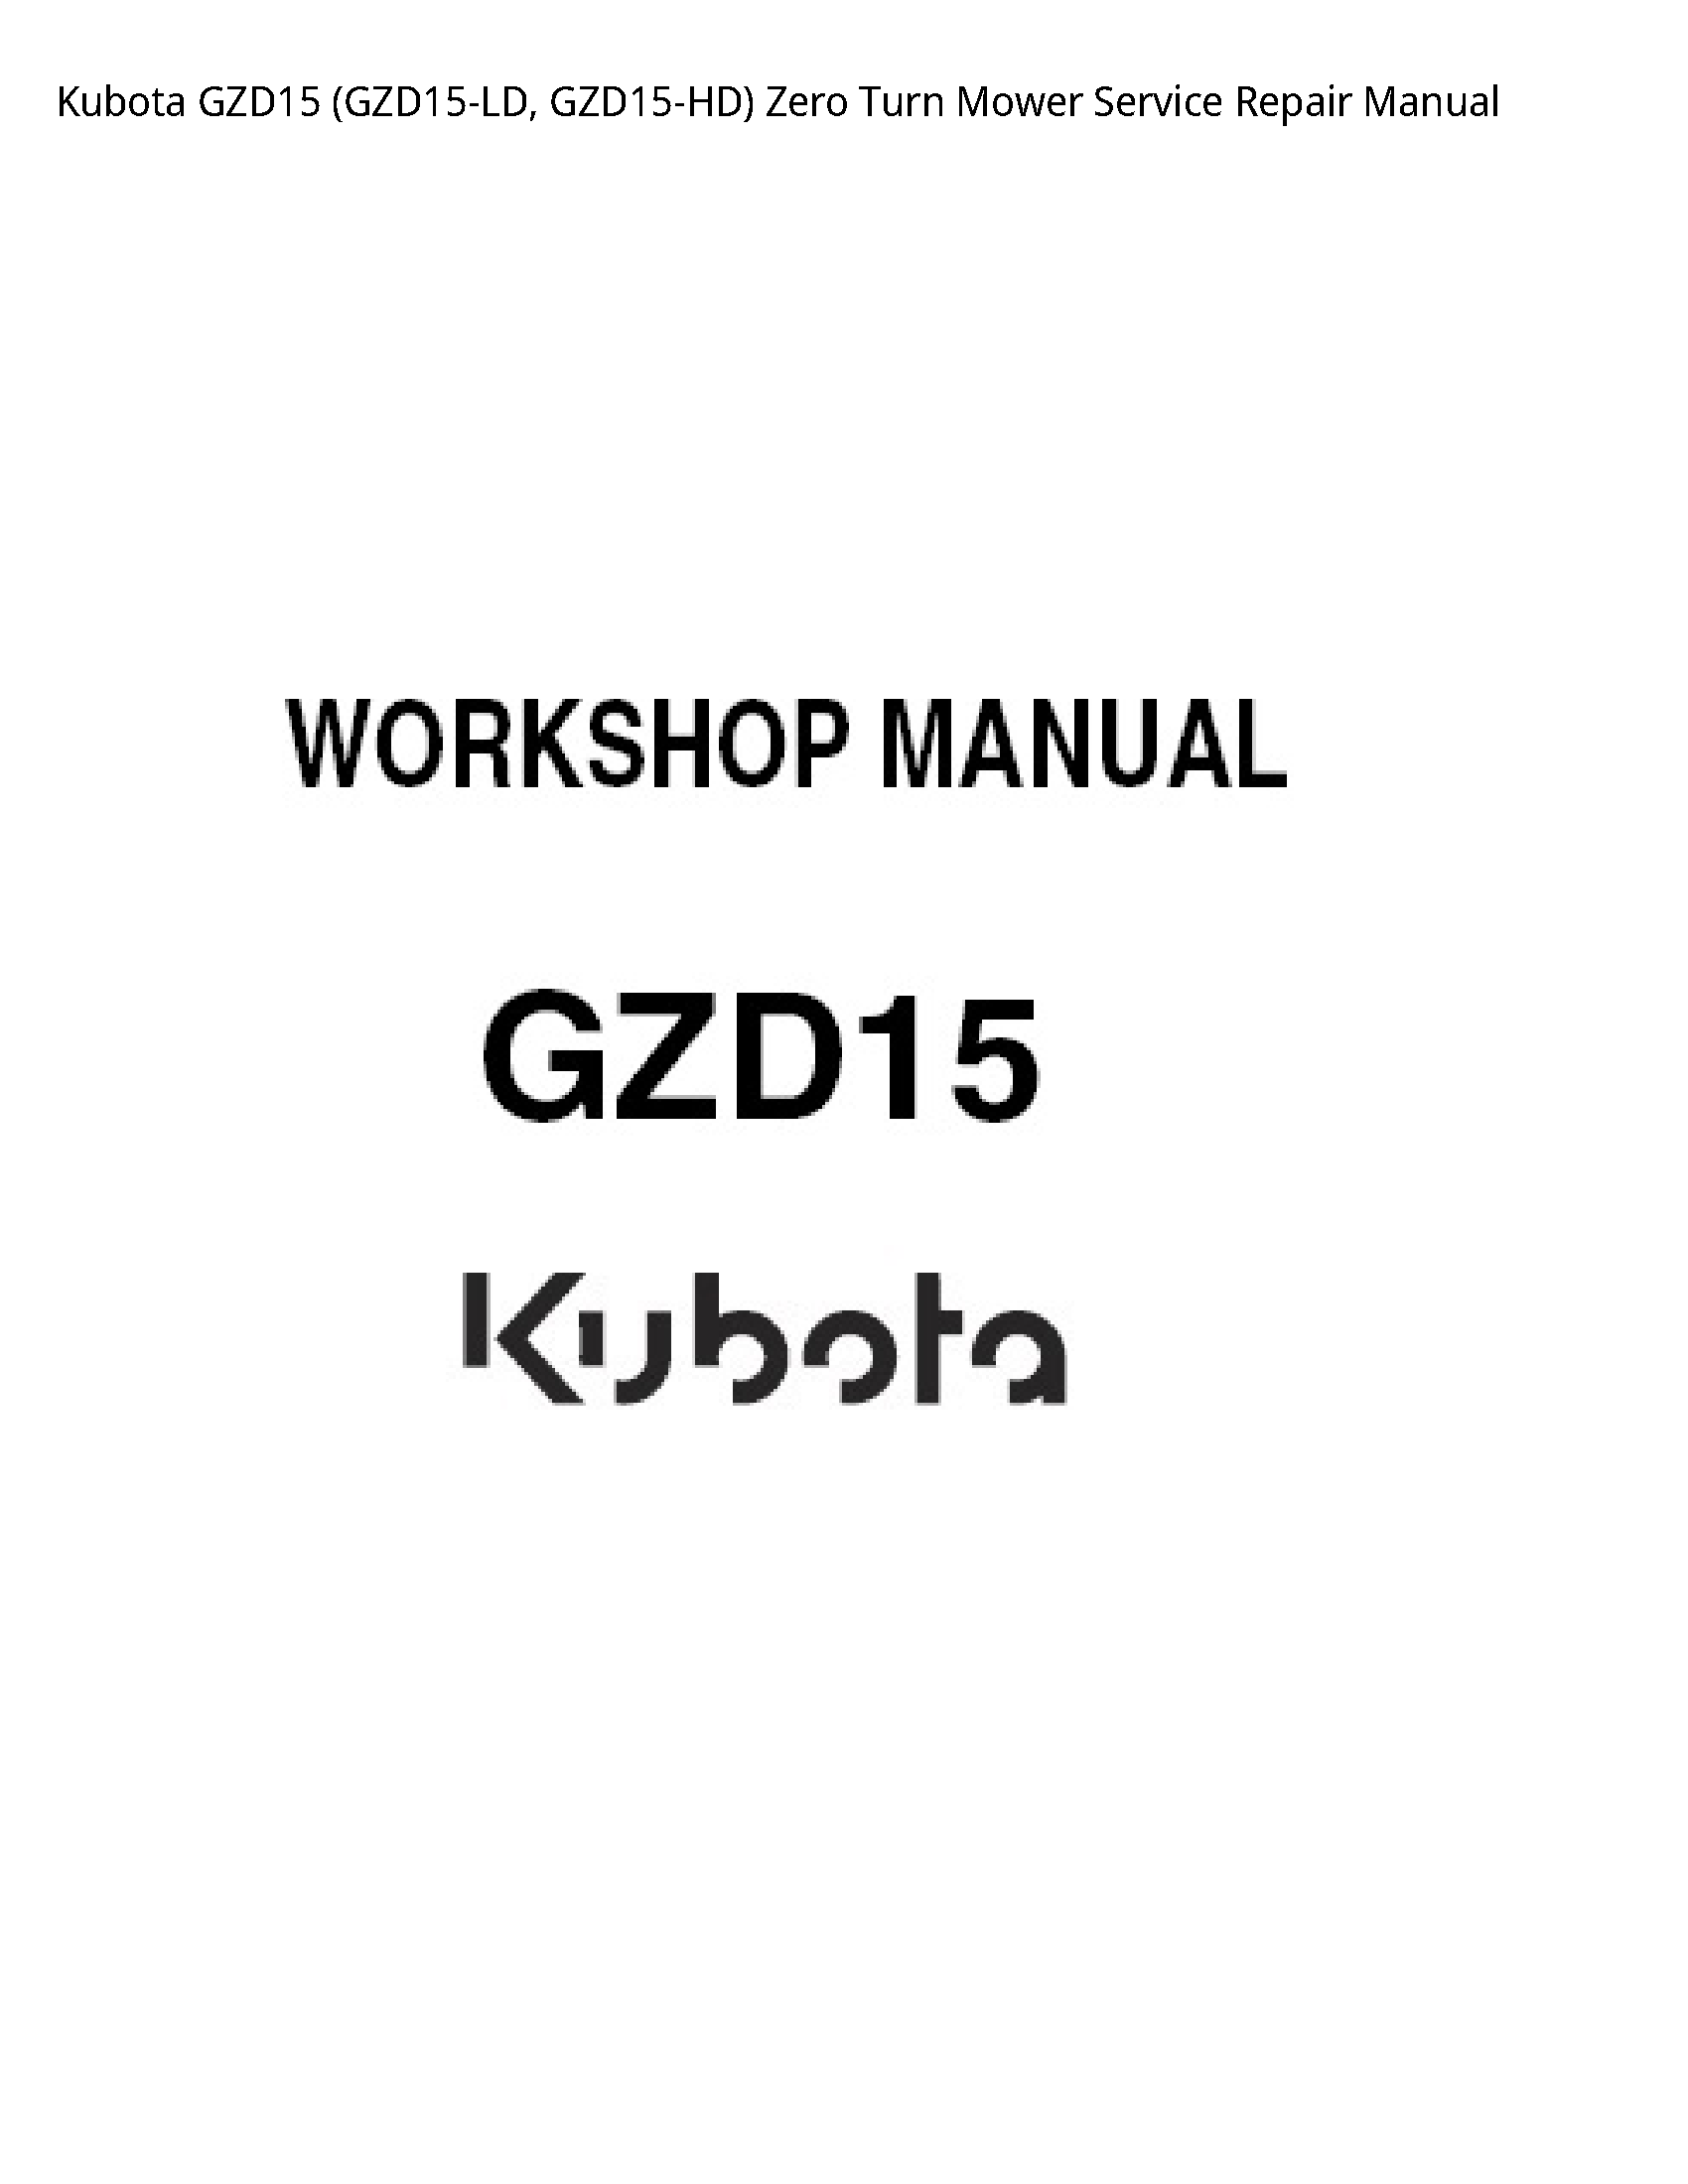 Kubota GZD15 Zero Turn Mower manual